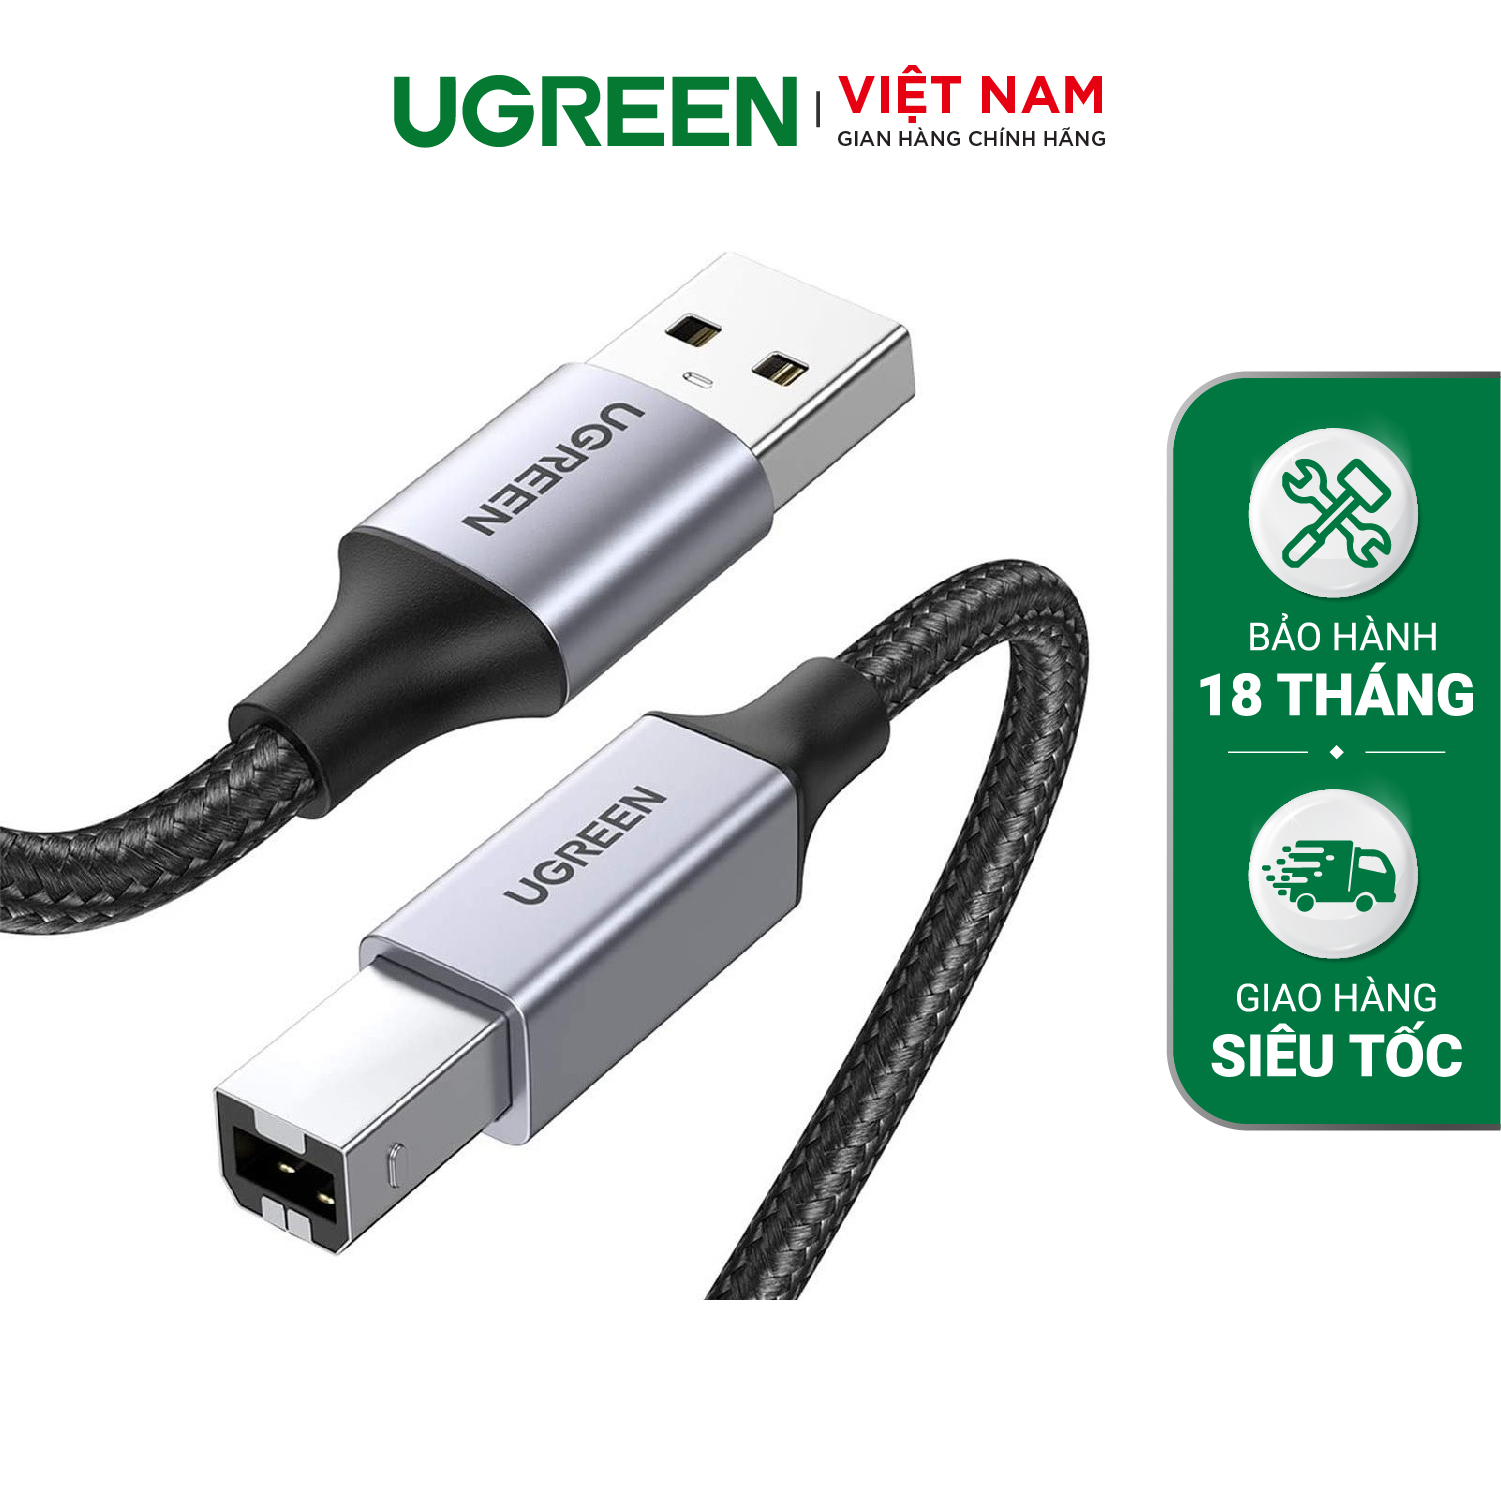 Cáp máy in USB A sang USB B UGREEN US369 – Tốc độ truyền tải 480Mbps – Sử dụng rộng rãi cho máy Fax máy in… – Hàng phân phối chính hãng – Bảo hành 18 tháng 1 đổi 1